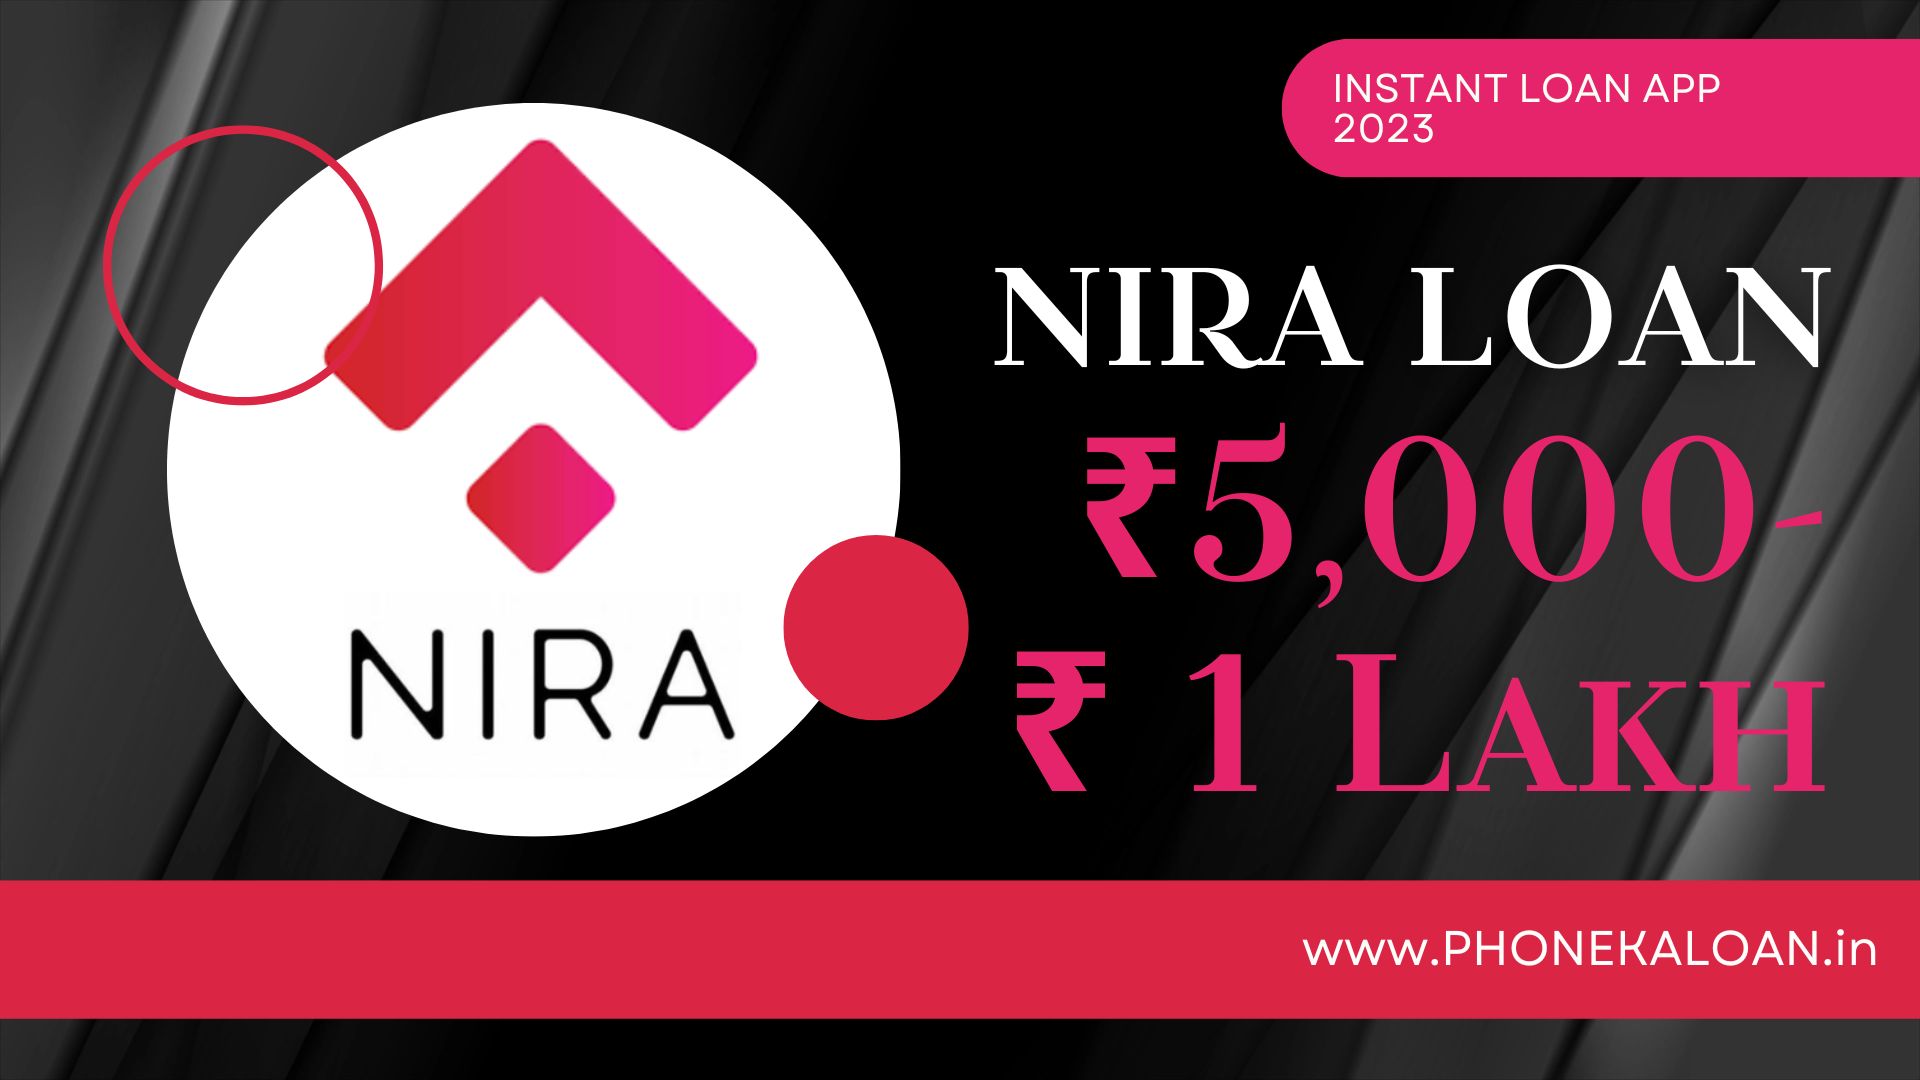 NIRA Loan App Loan Amount